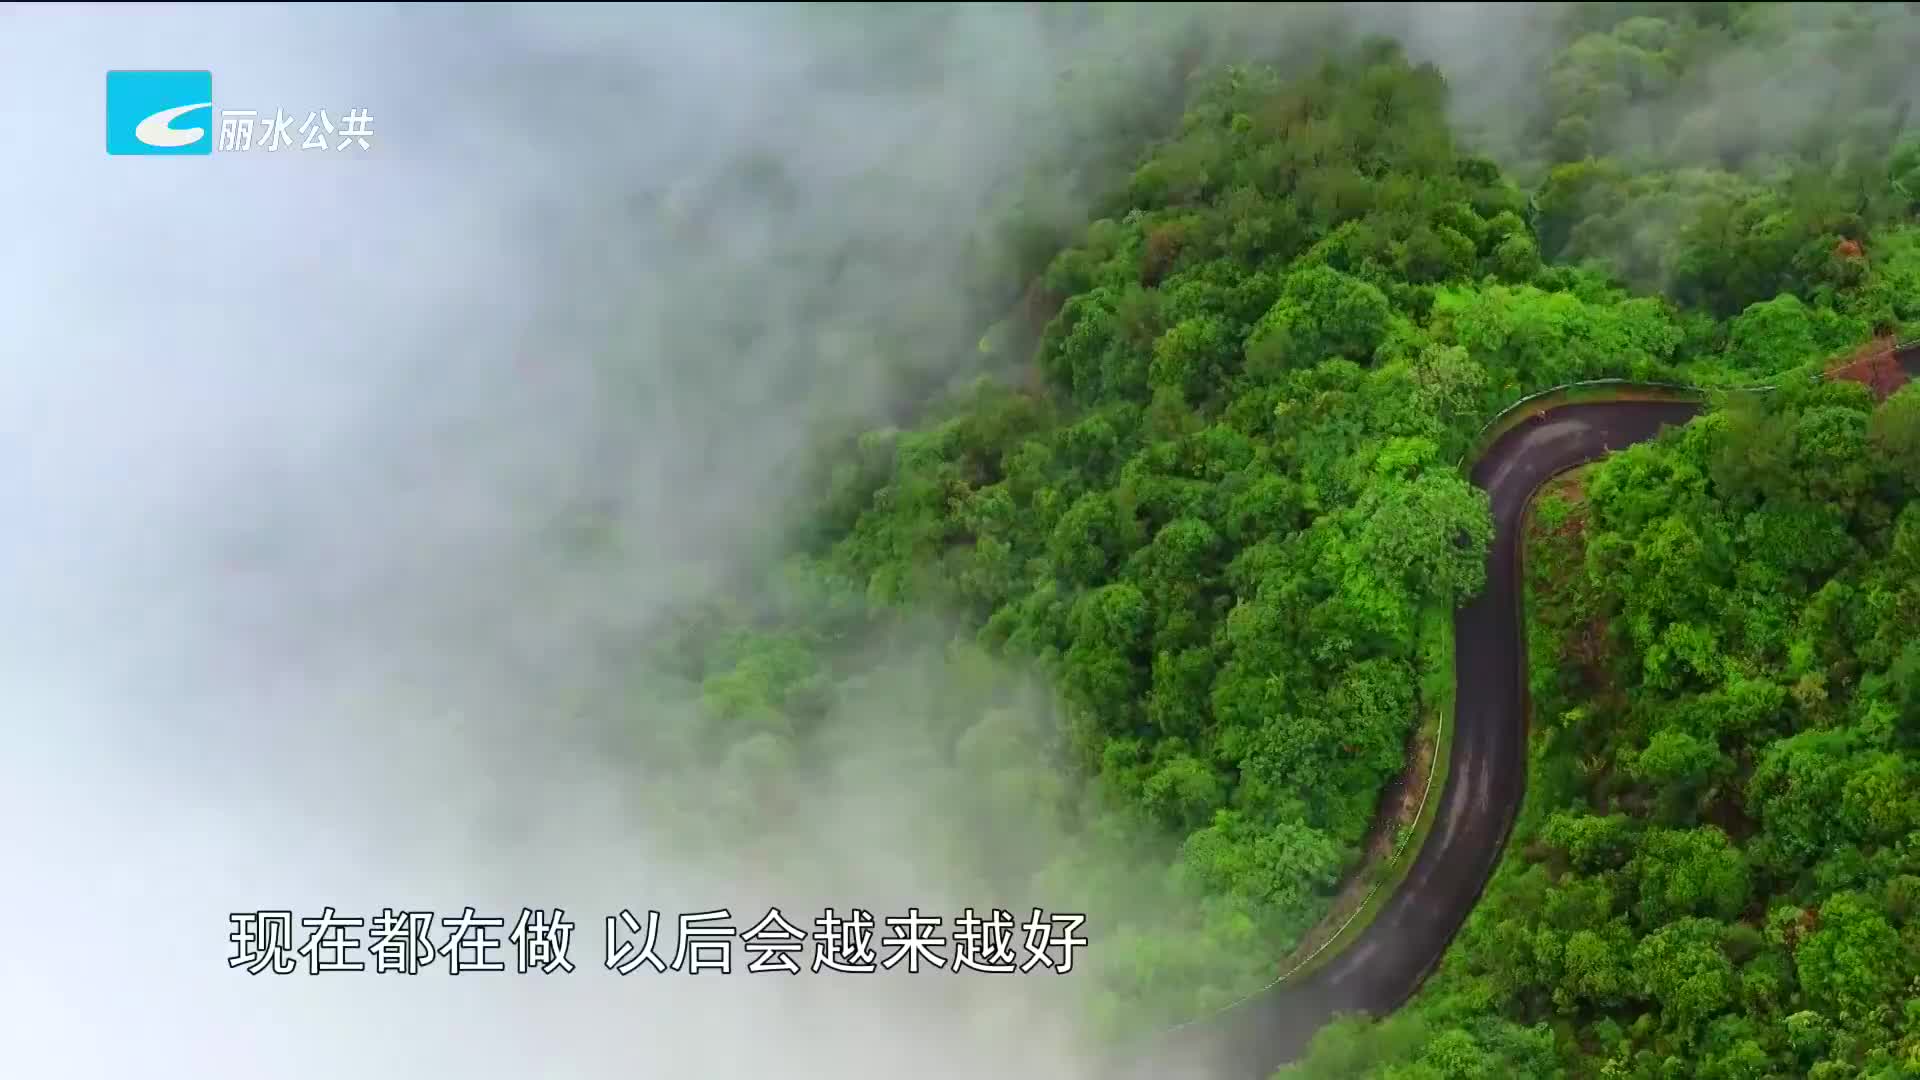 白云国家森林公园被评为浙江省新十大名山公园